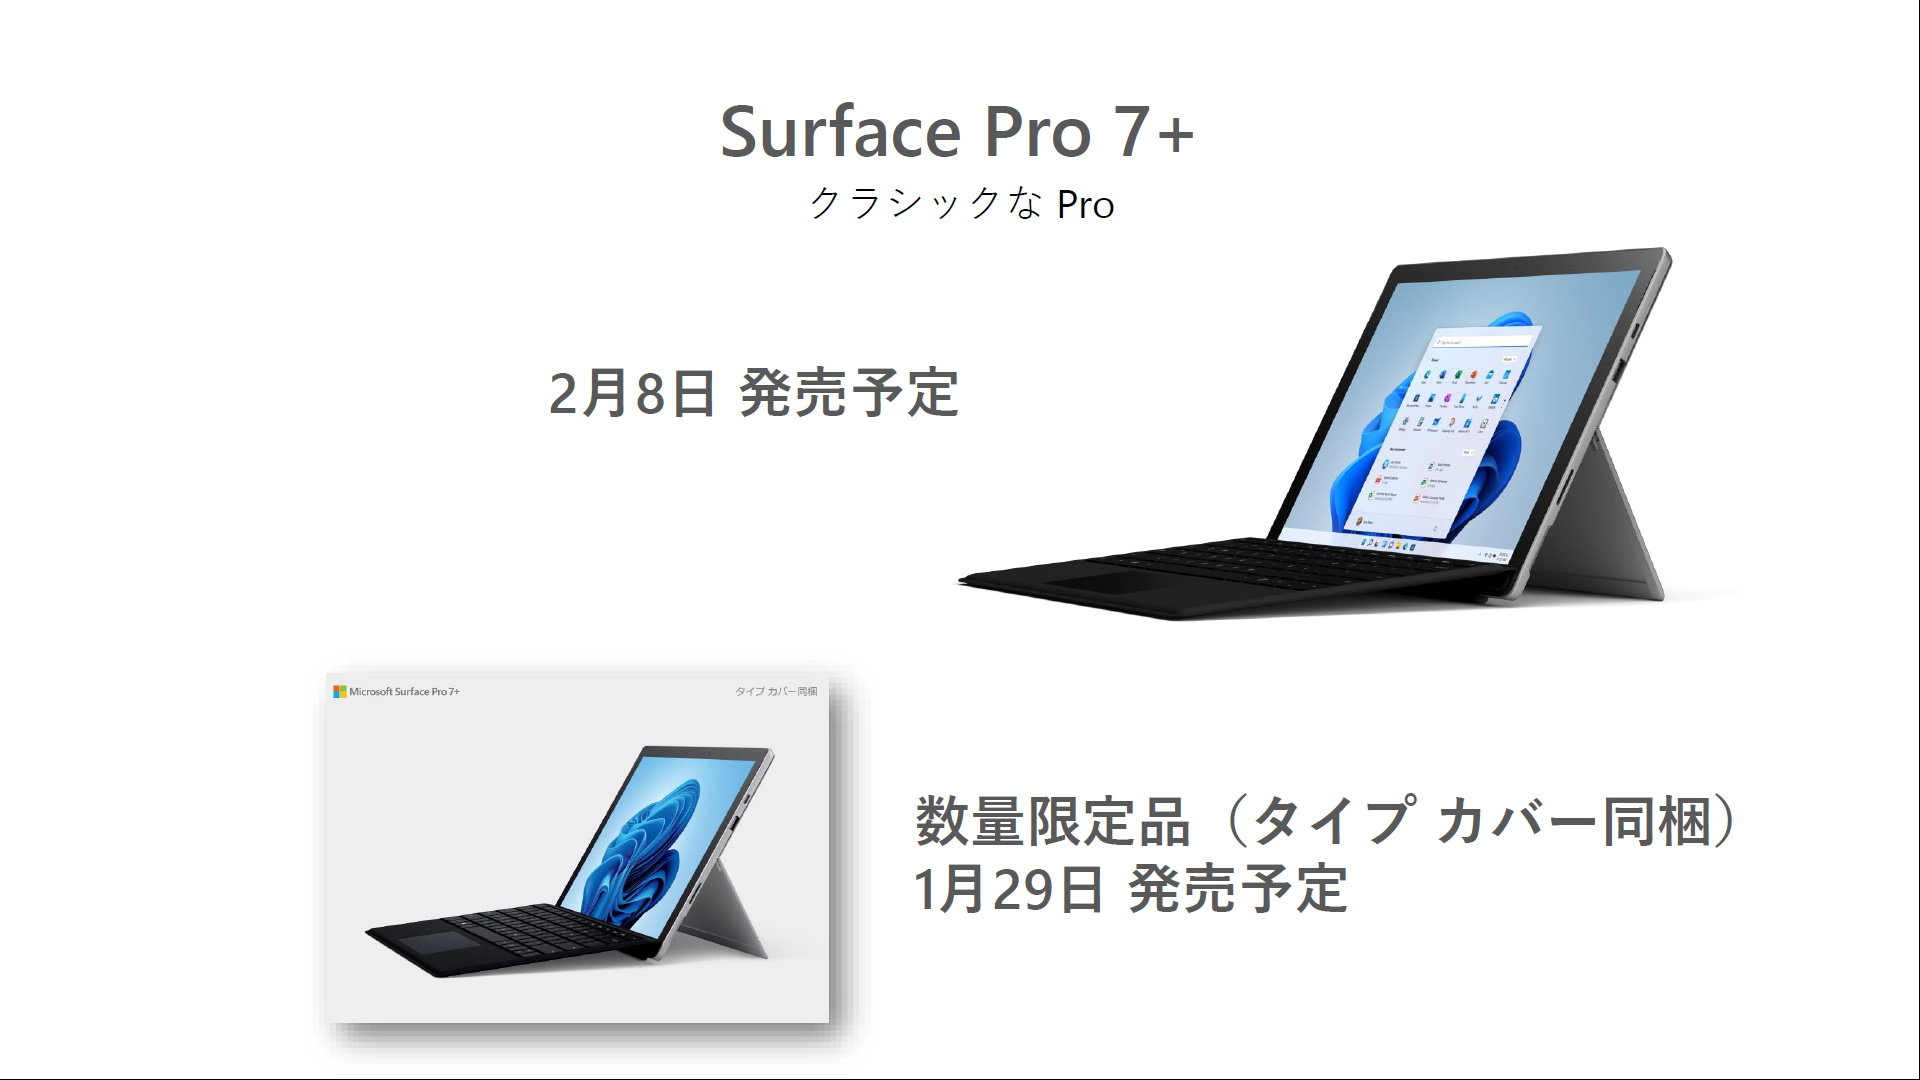 Surface Pro 7+」の個人向けモデルが登場 タイプカバー付きモデルを 